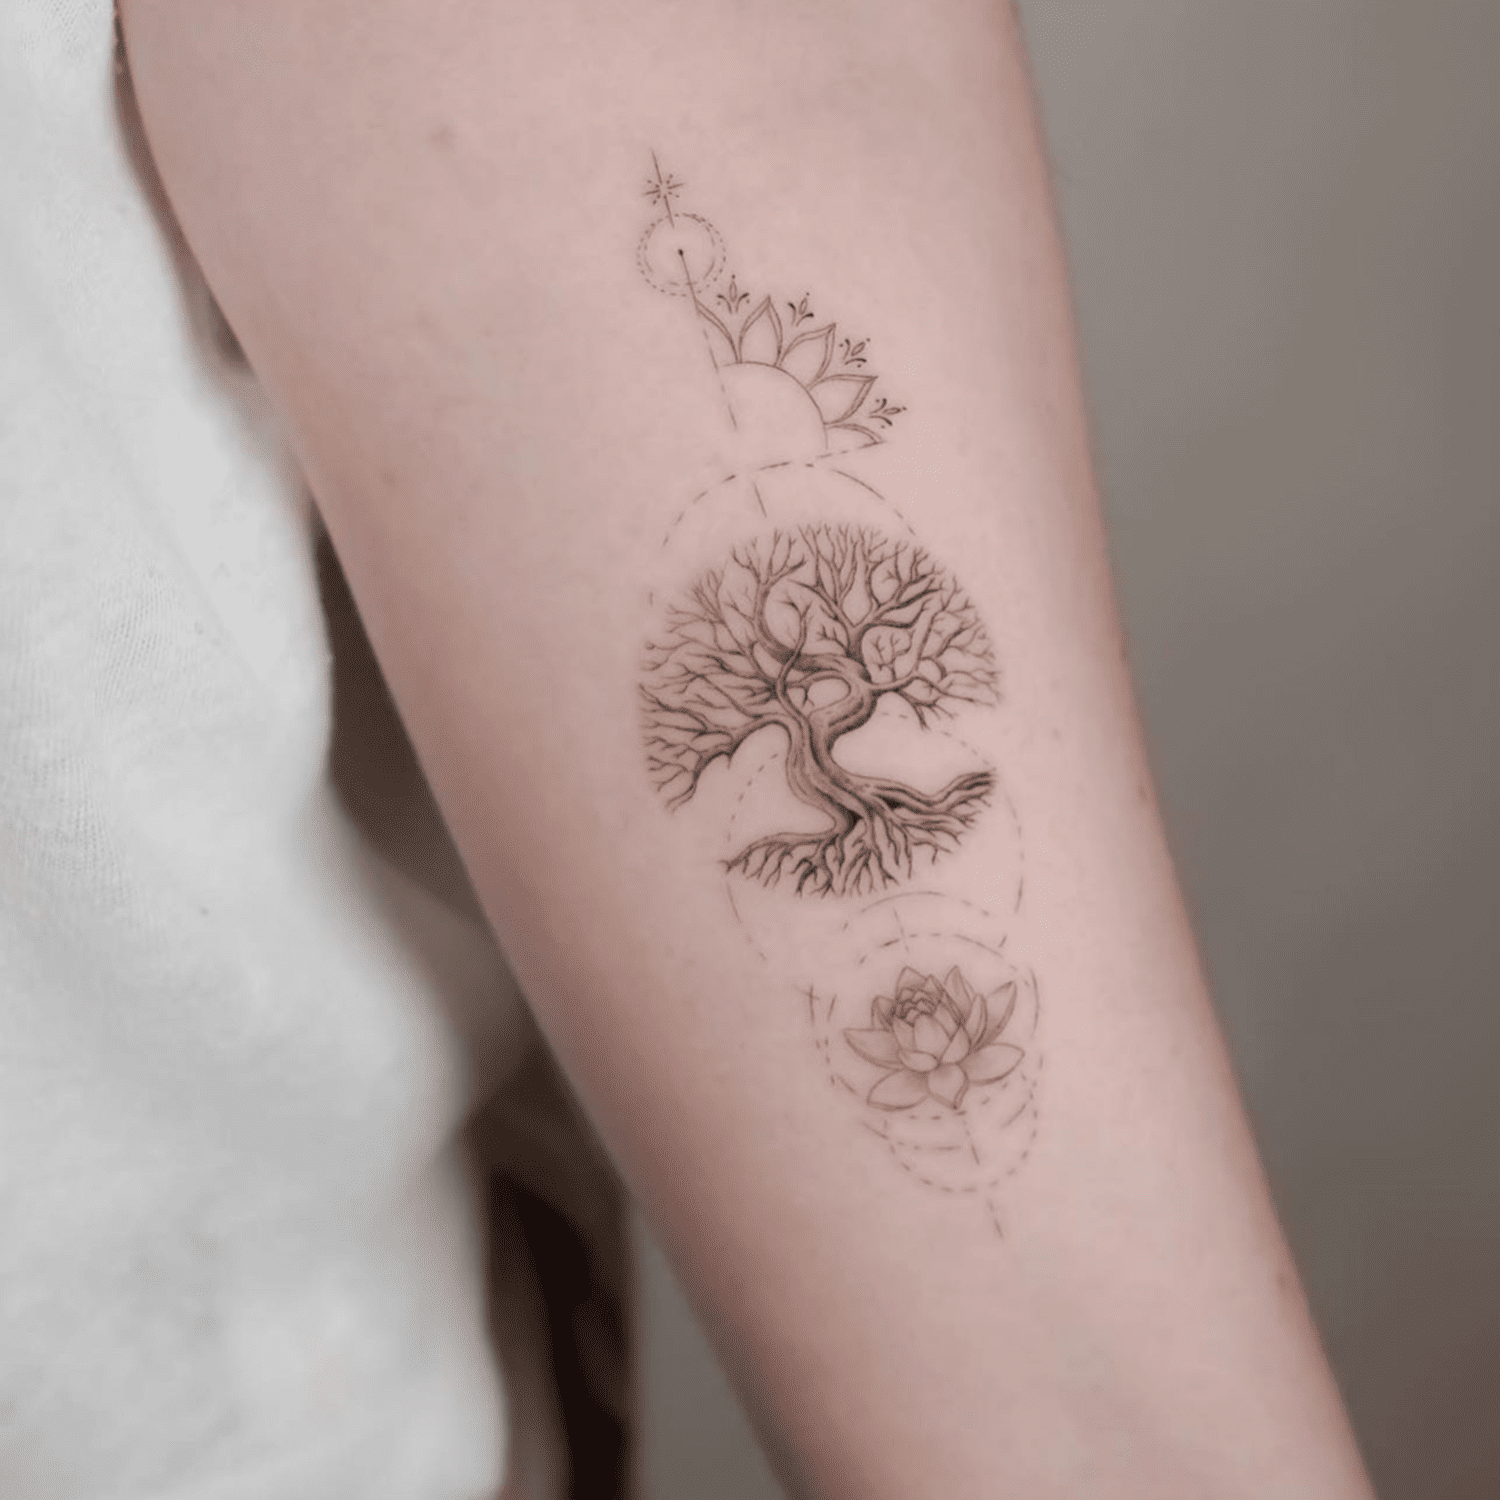 Tatuagem de árvore no antebraço com motivos zen